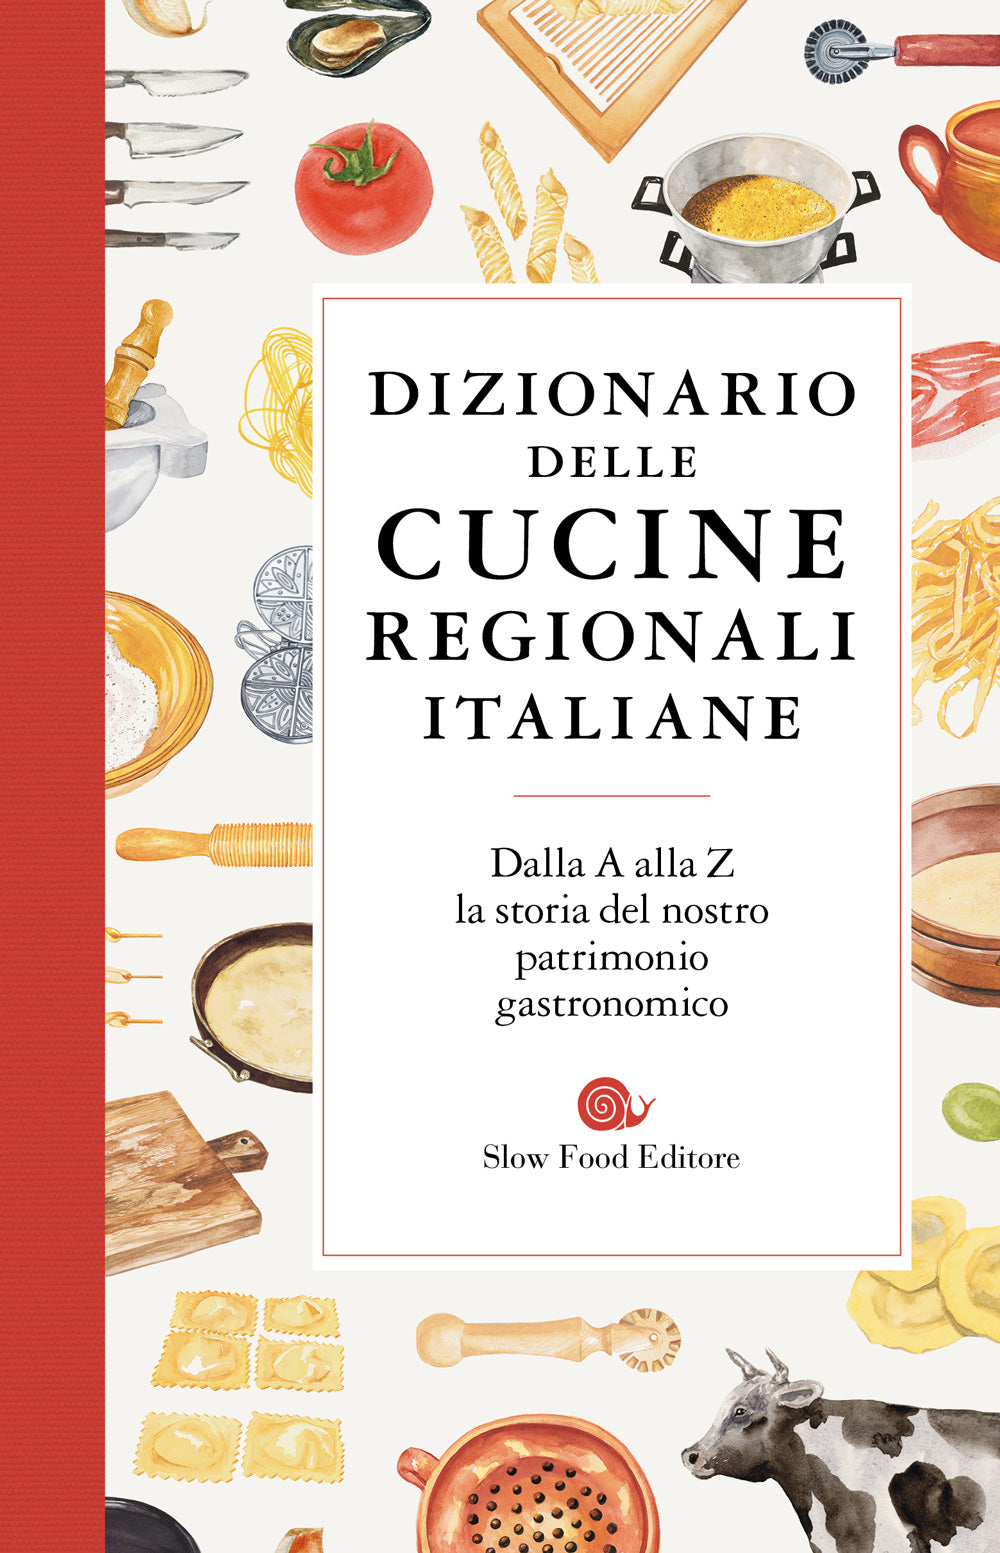 Dizionario delle cucine regionali italiane::Dalla A alla Z la storia del nostro patrimonio gastronomico